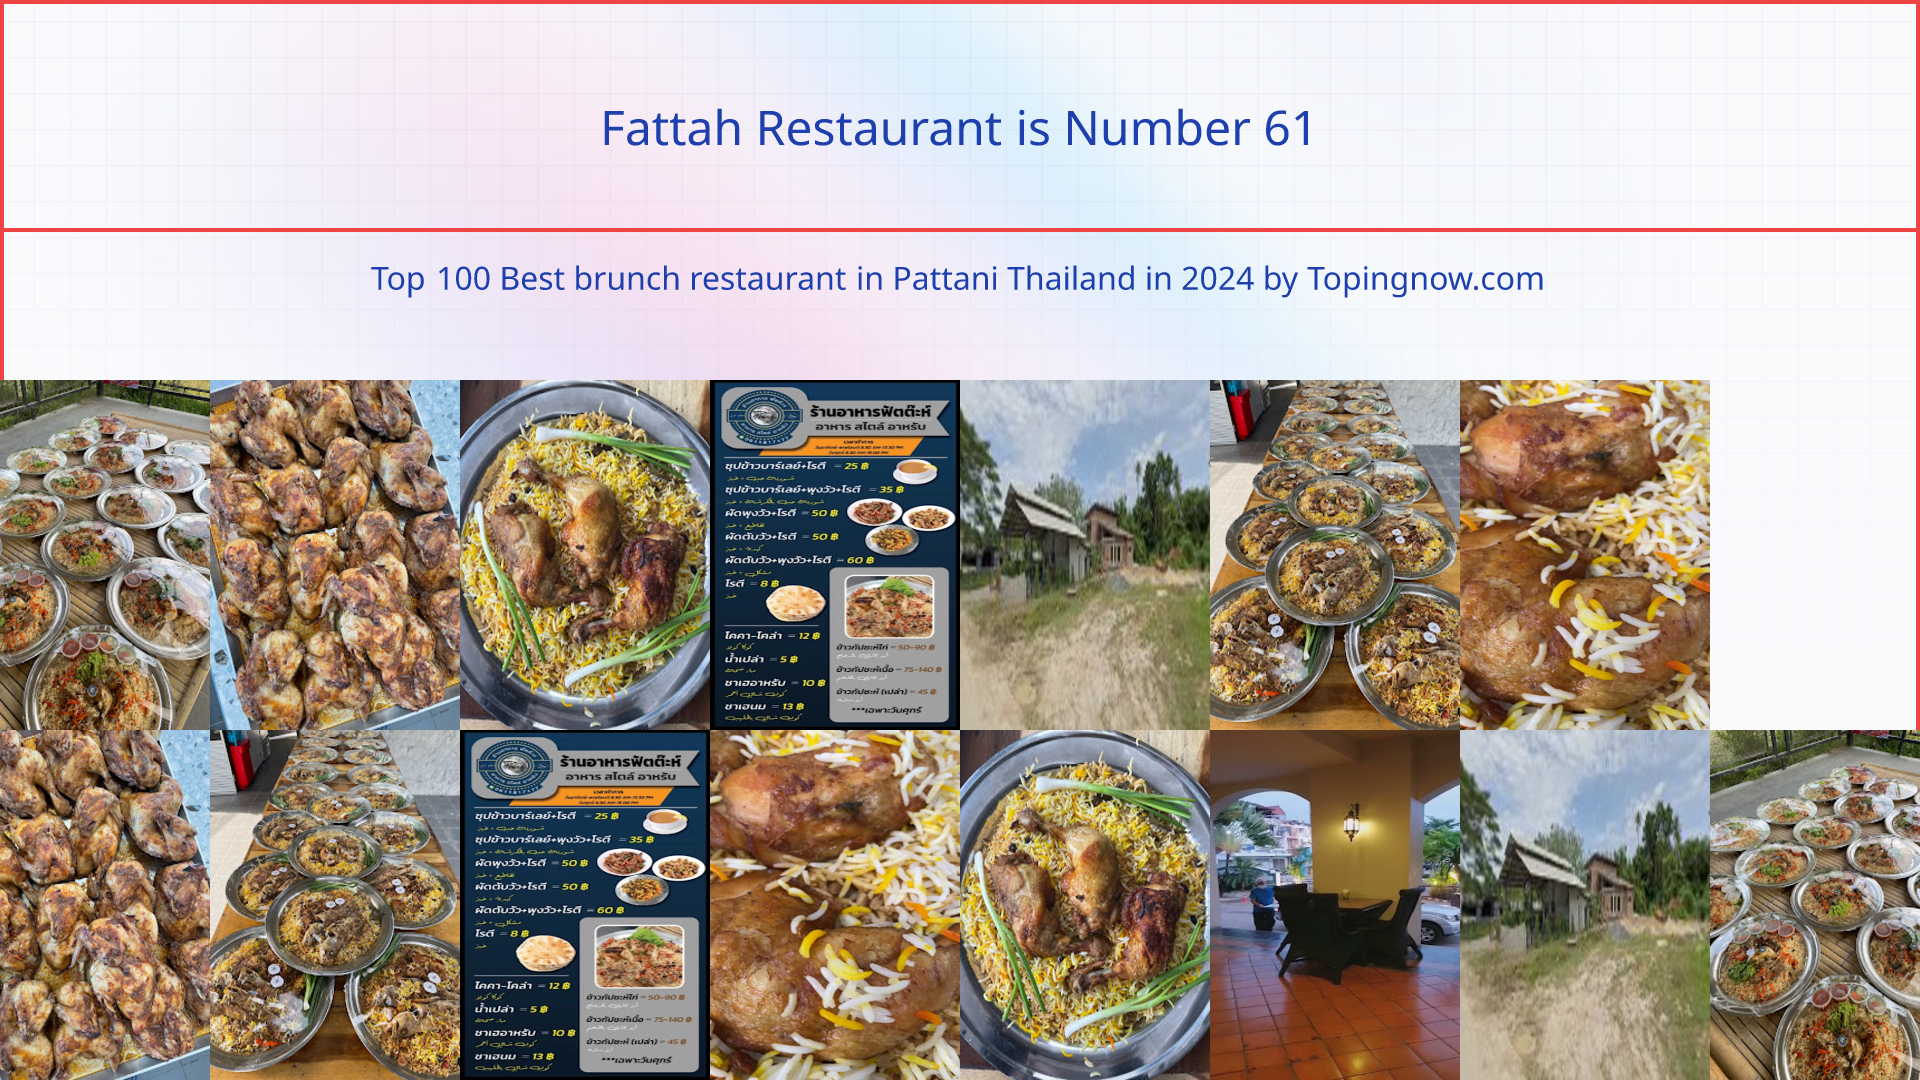 Fattah Restaurant: Top 100 Best brunch restaurant in Pattani Thailand in 2024